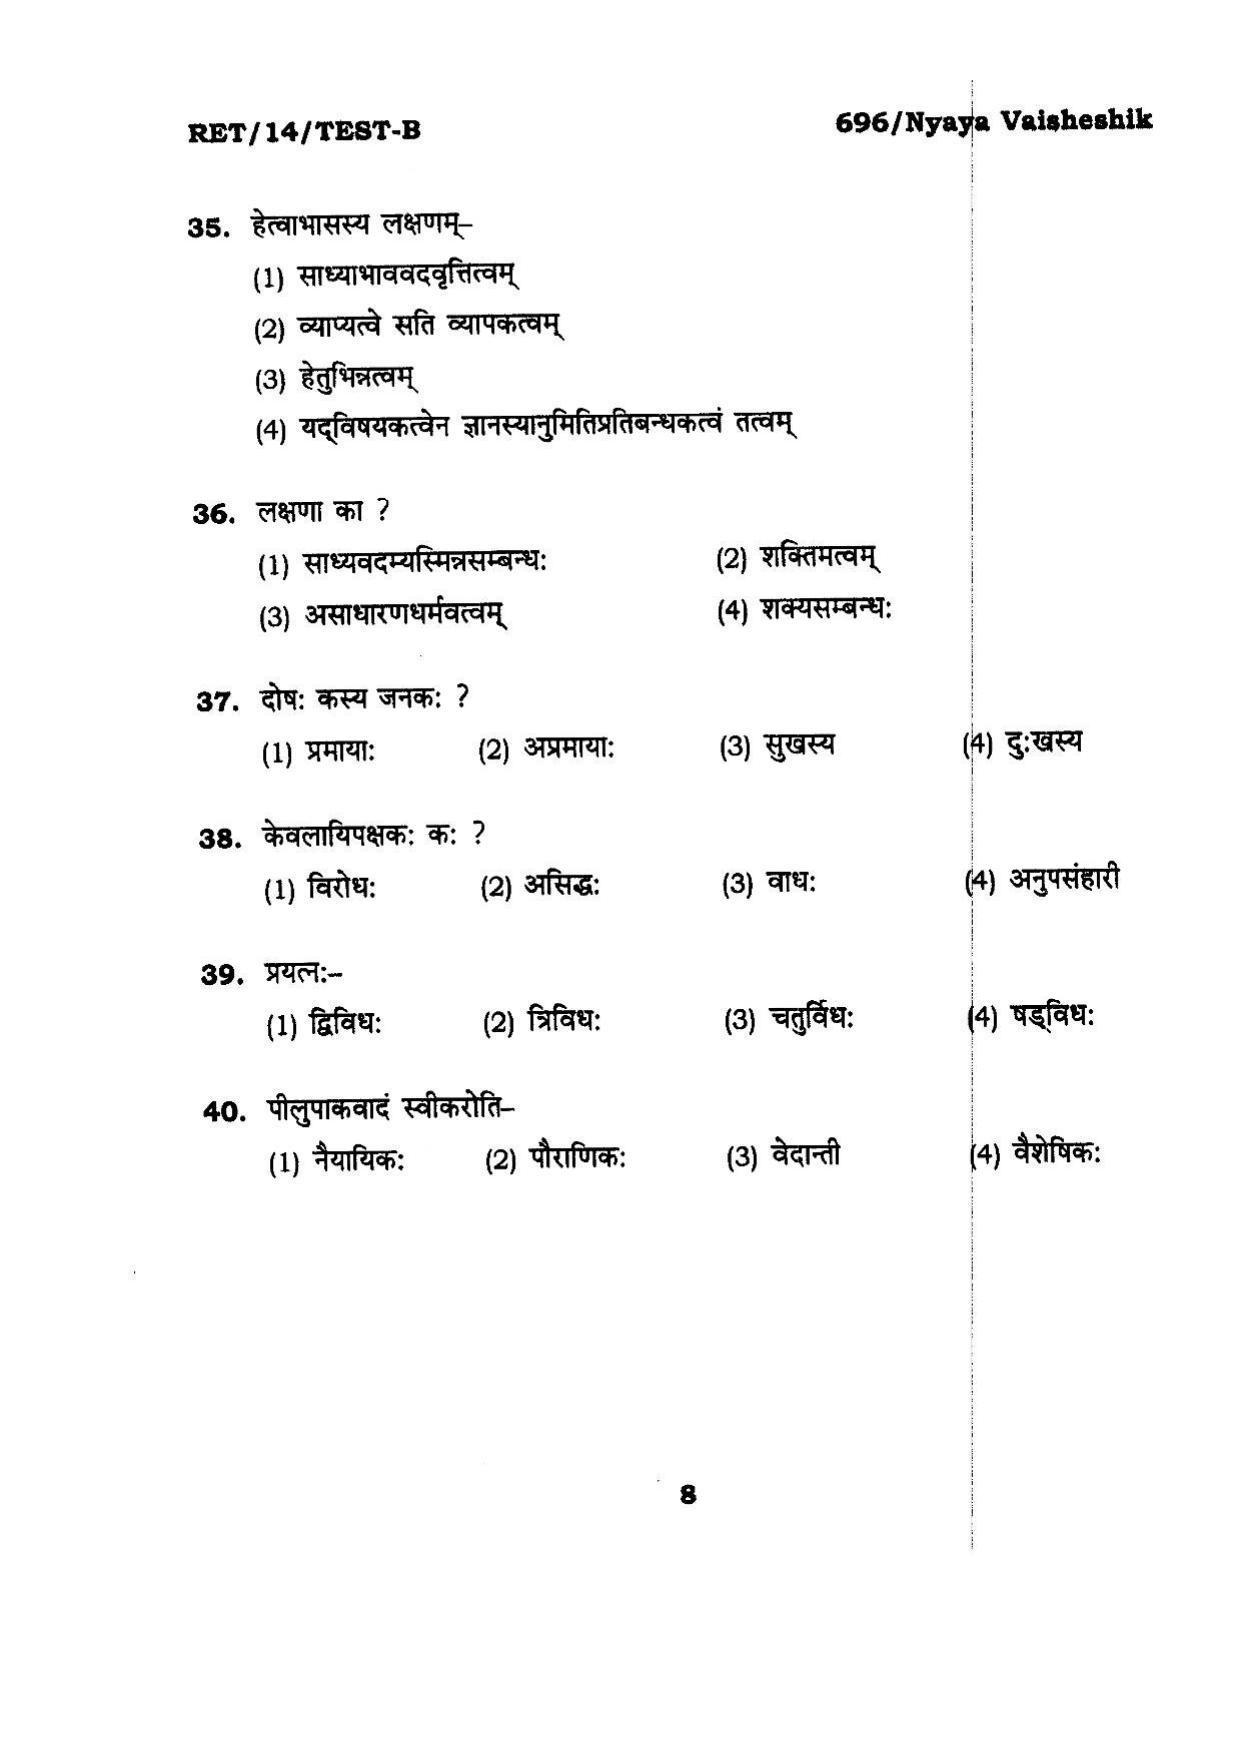 BHU RET Nyaya Vaisheshik 2014 Question Paper - Page 8